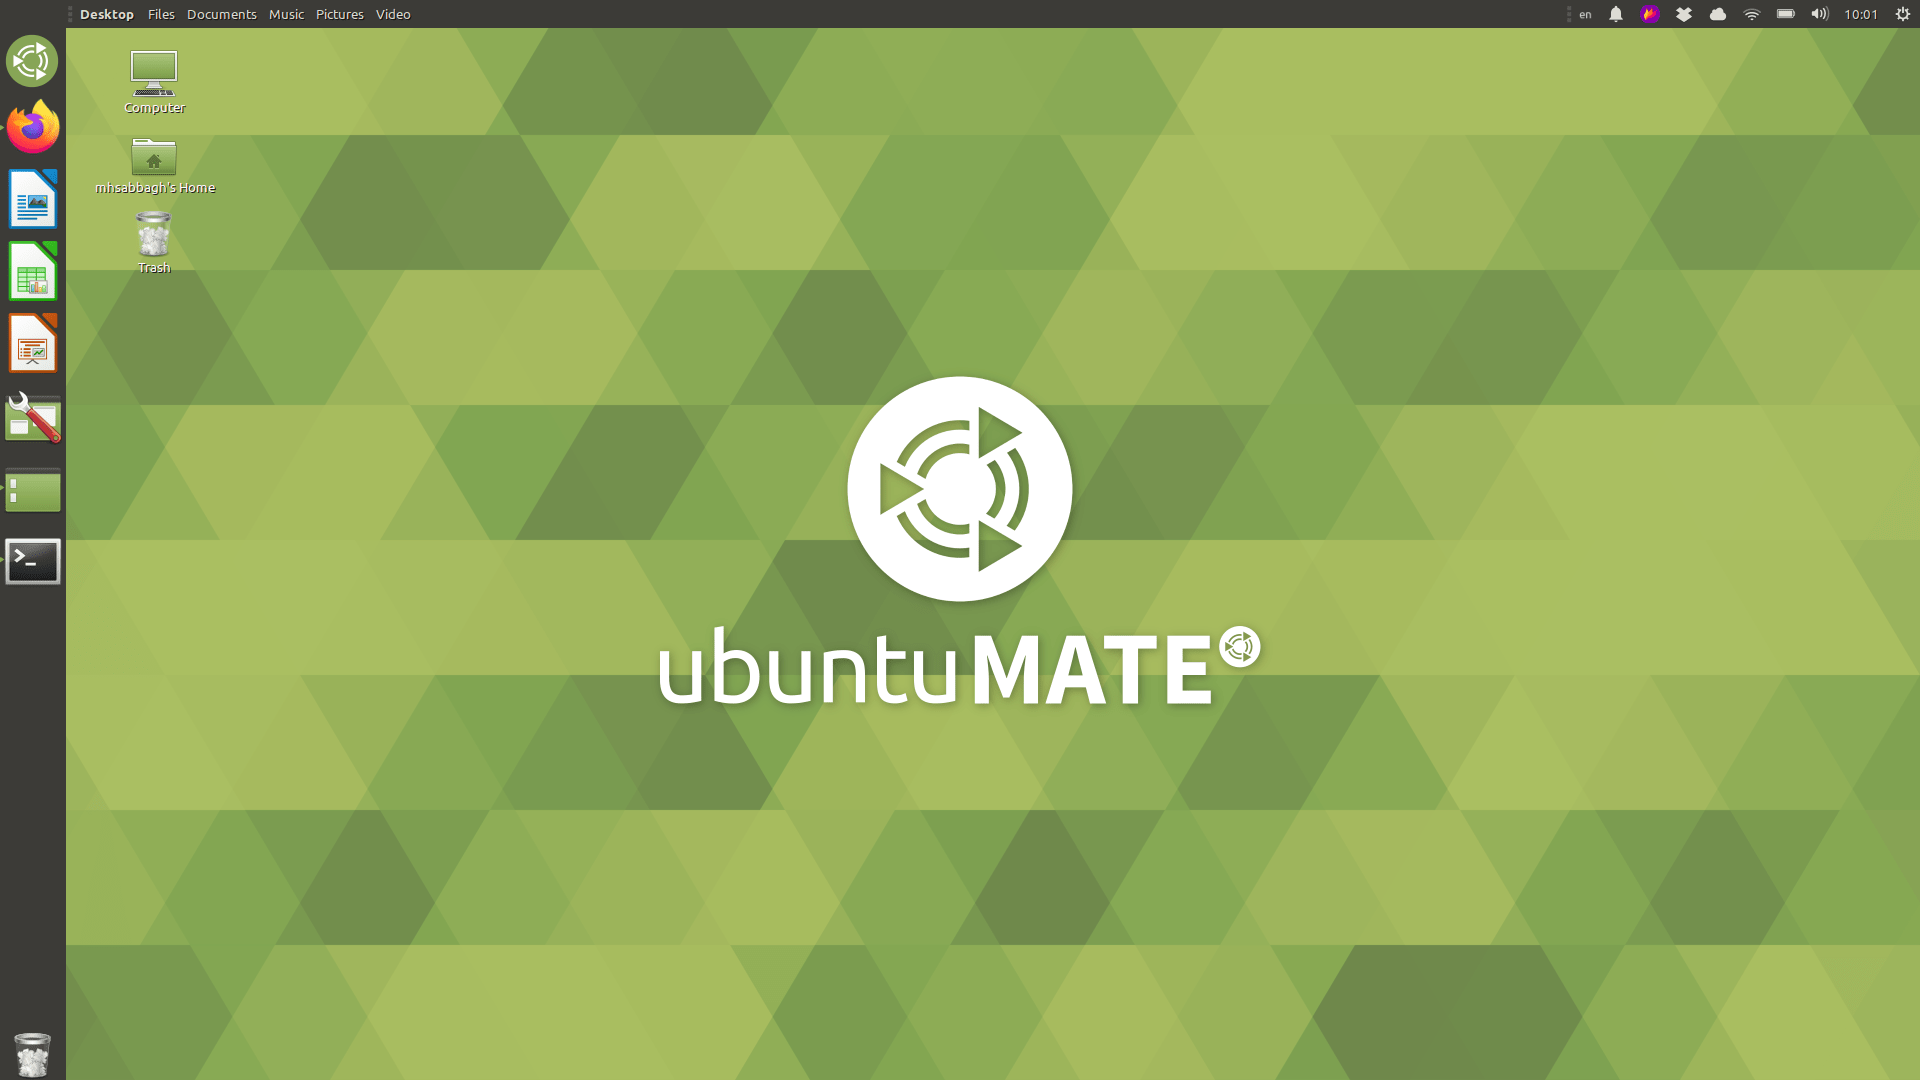 Best Distribution Of 2019 Goes To Ubuntu Mate - Ubuntu Mate - HD Wallpaper 